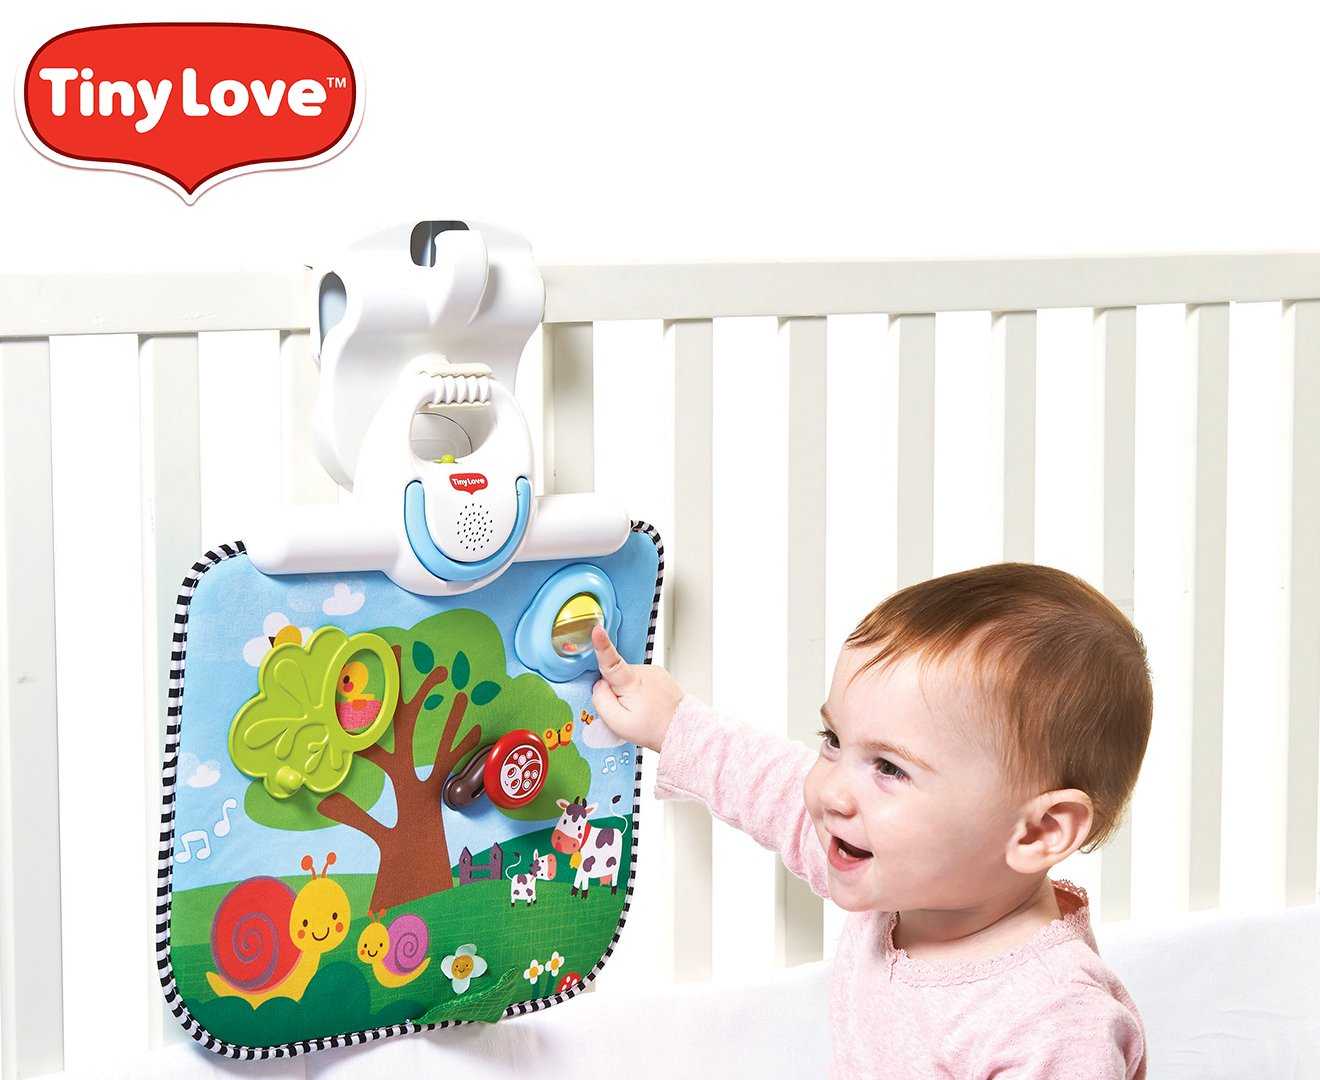 Tiny Love Double Sided Crib Activity Toy